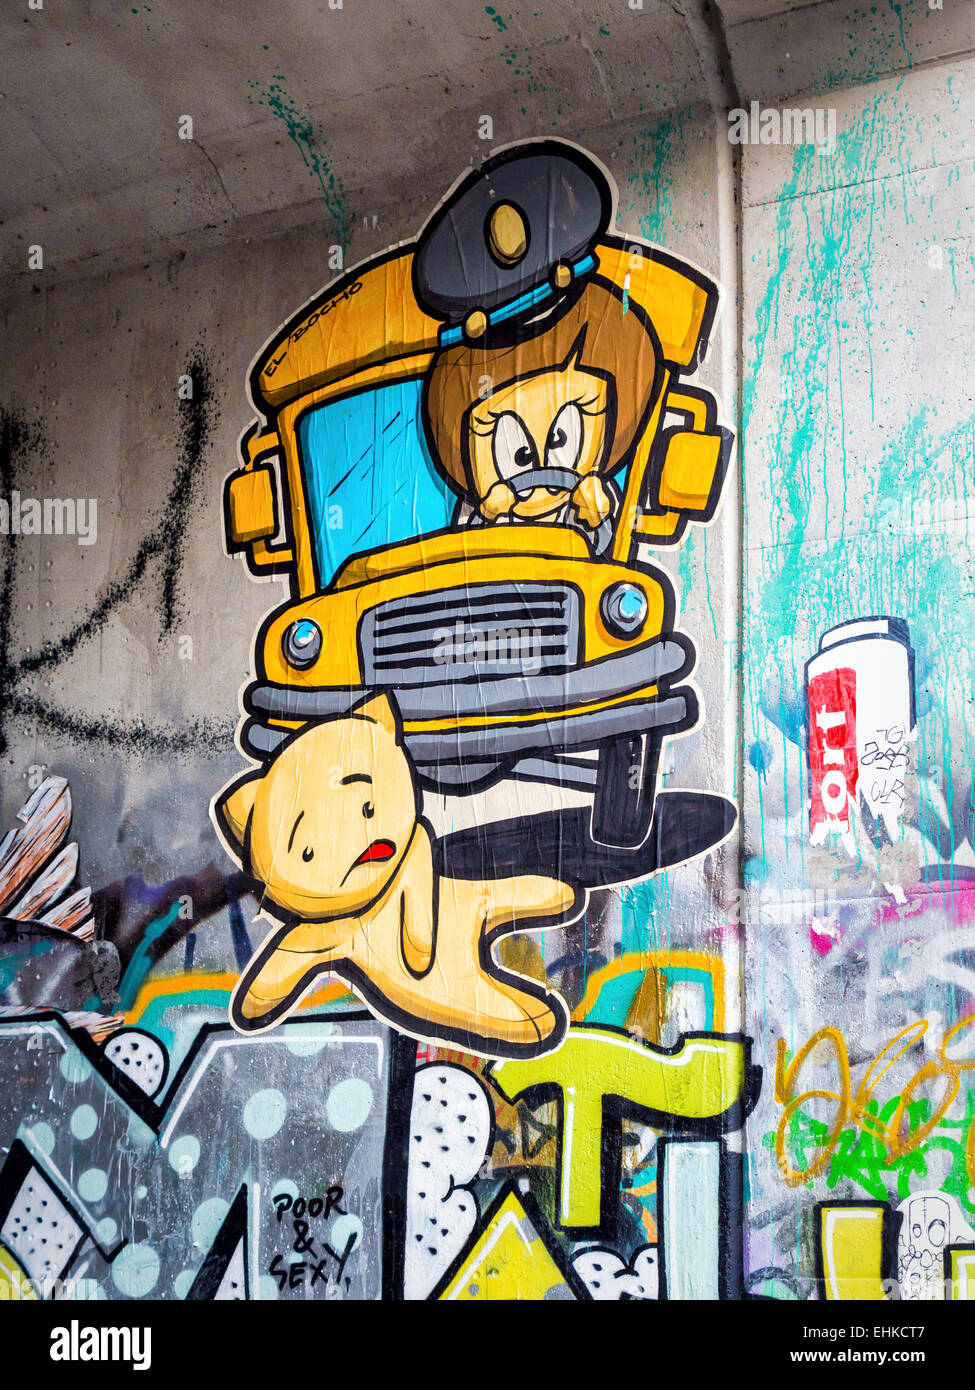 Street art by El Bocho, Little Lucy kills her cat series, Mitte Berlin Stock Photo